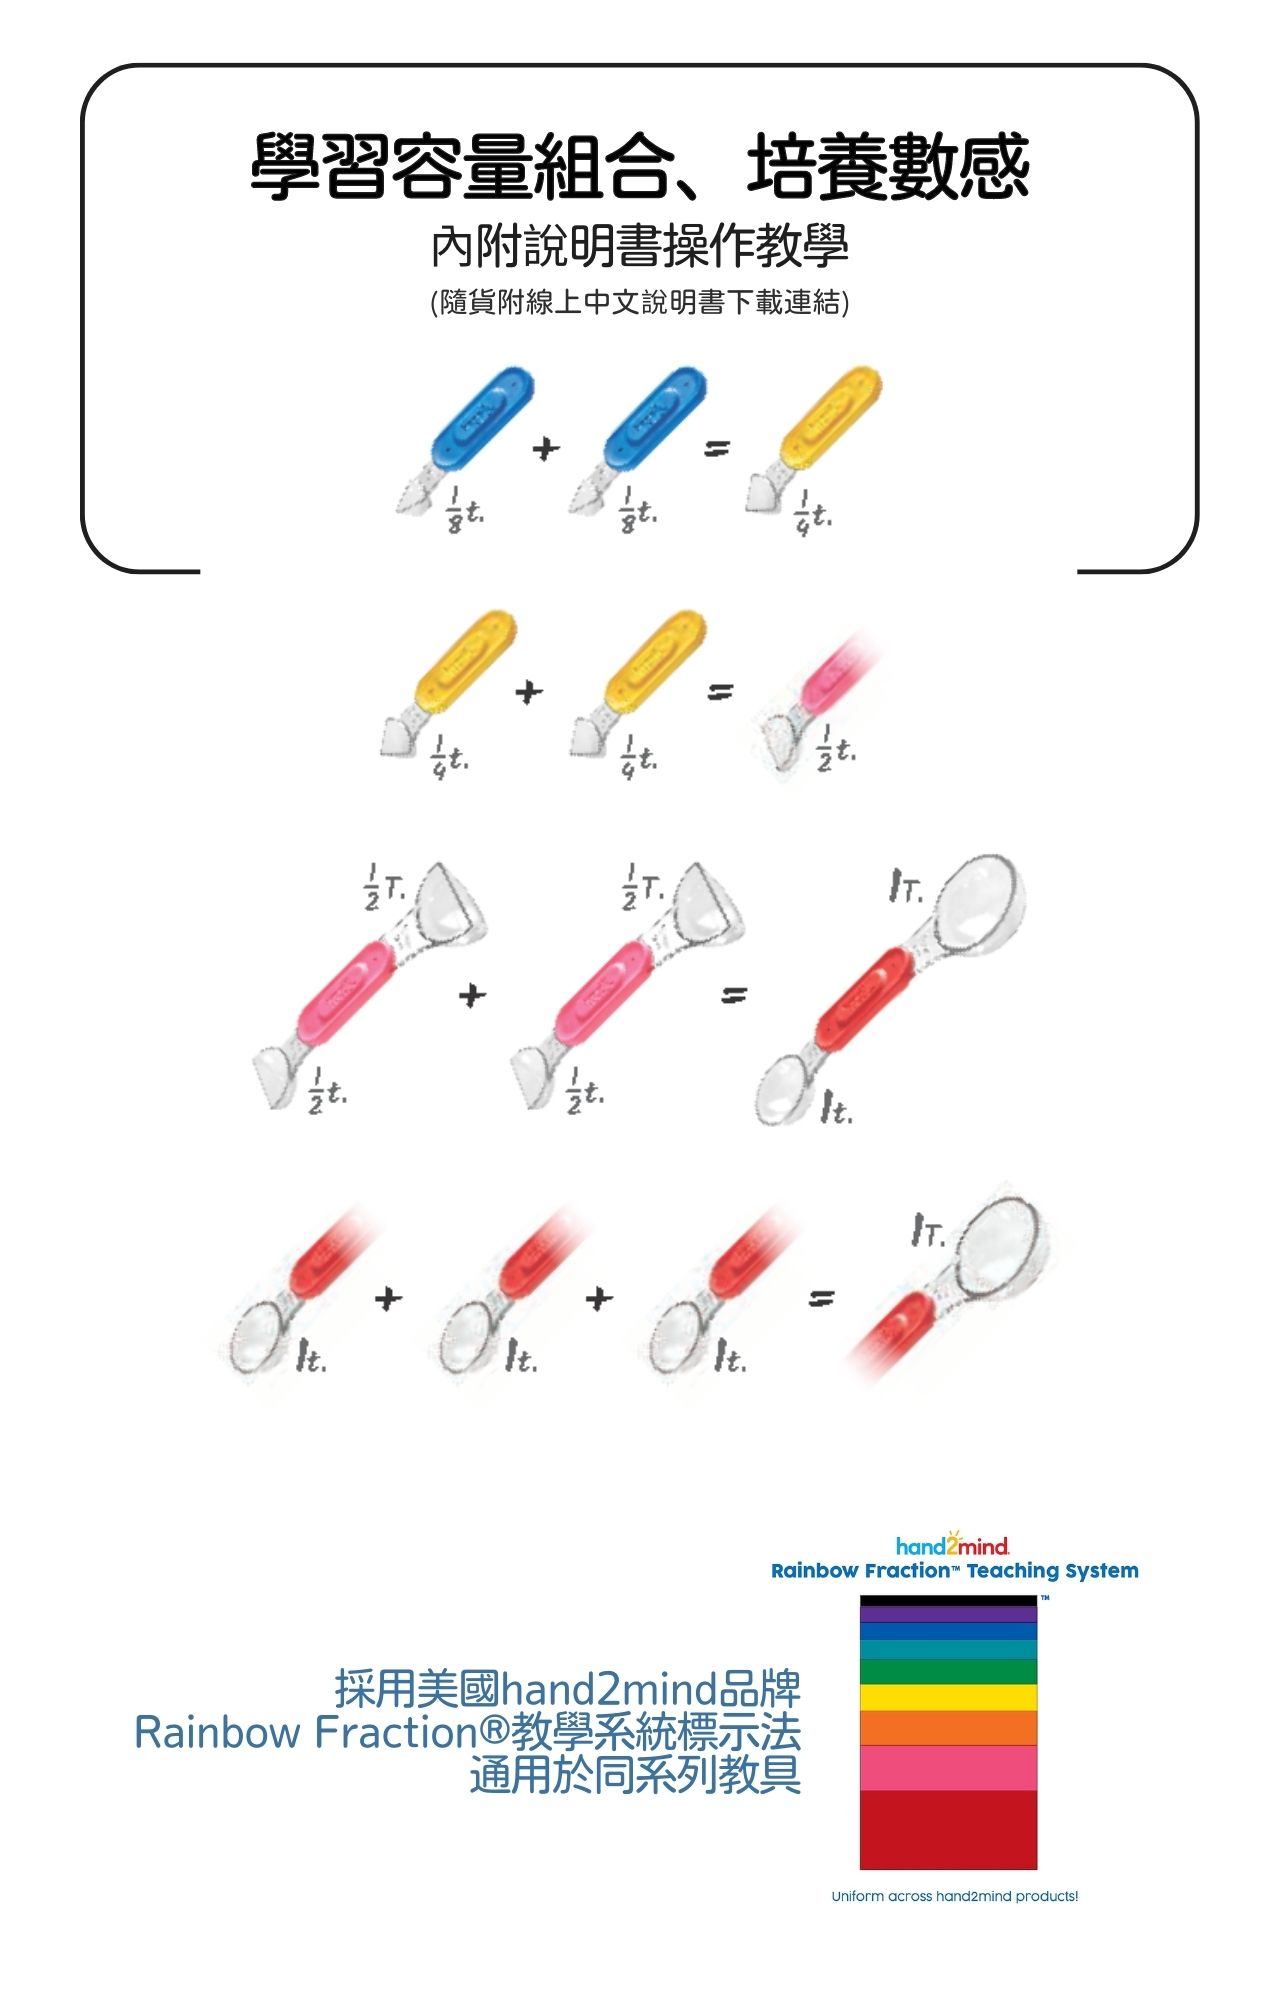 產品說明圖3_hand2mind 益智數學教具 彩虹量匙組